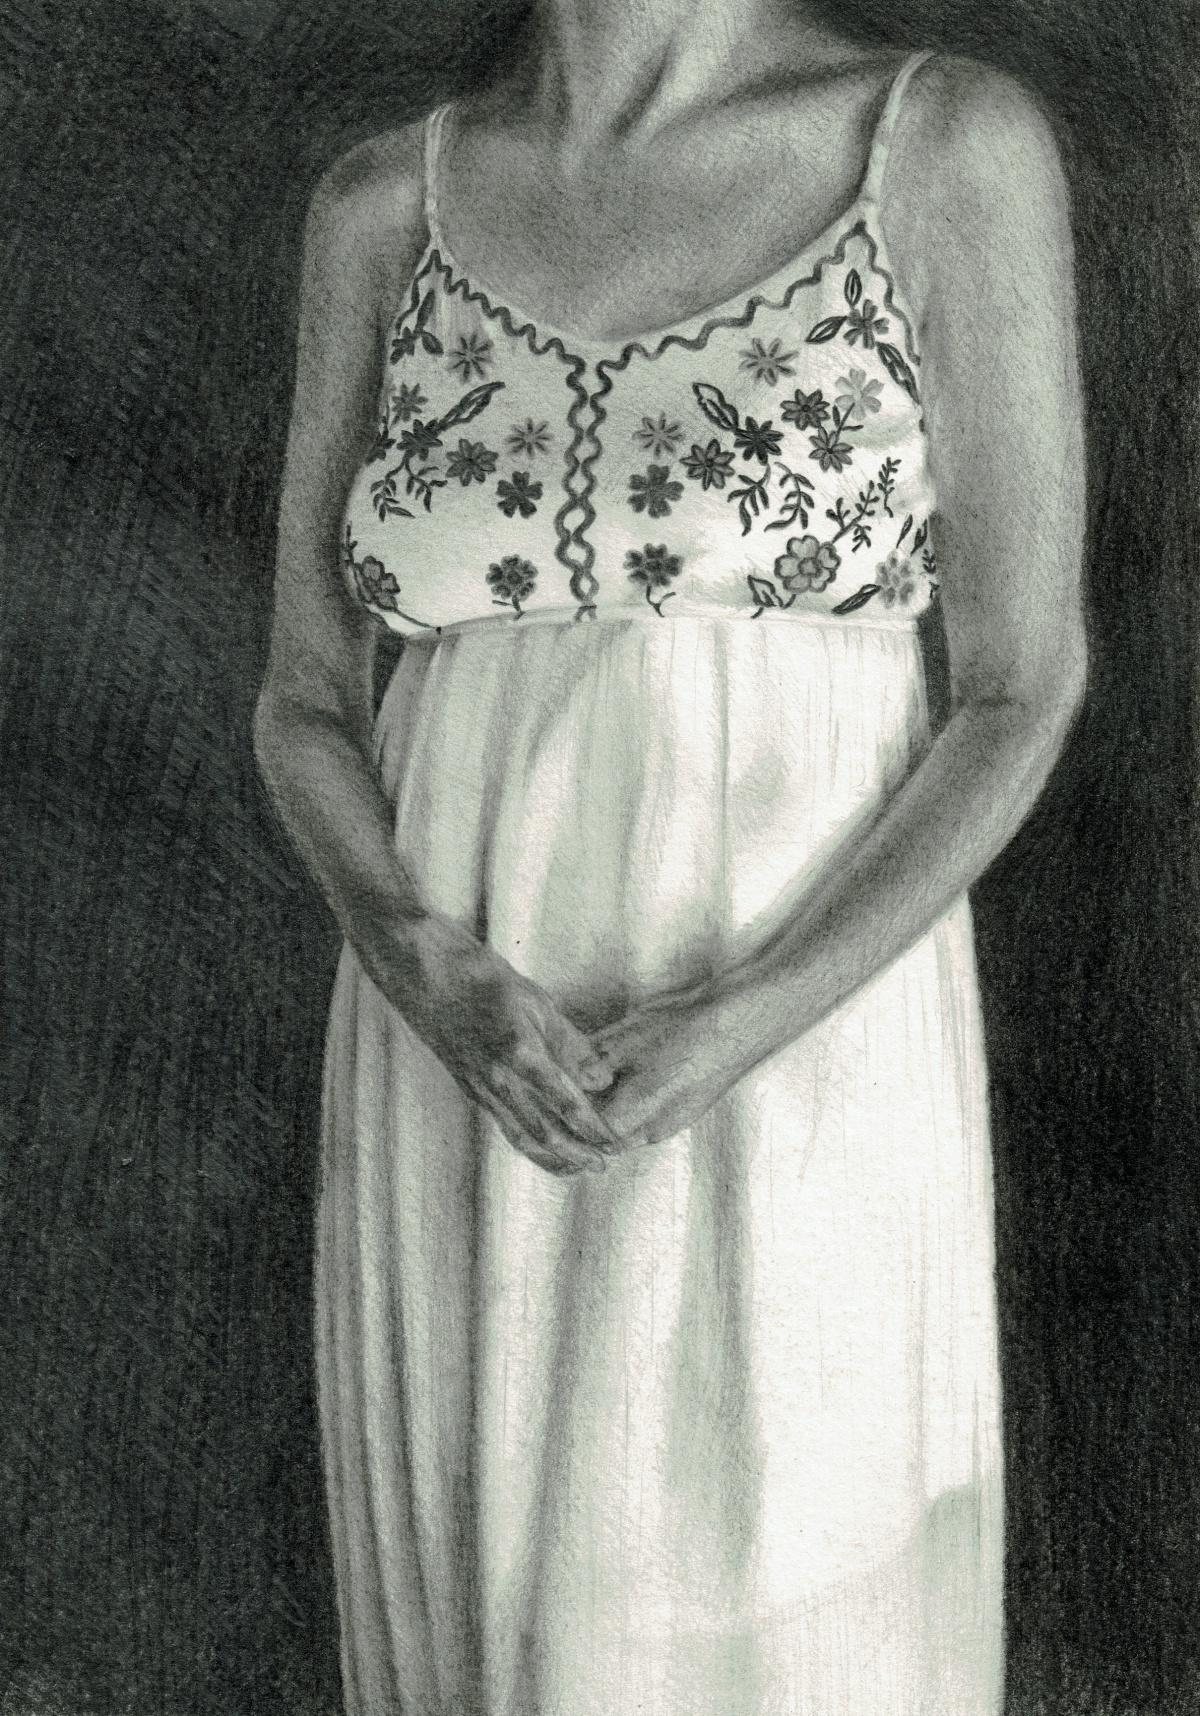 Draft 5 - Polish Young Art, Realism, Drawing, Woman, Monochromatic